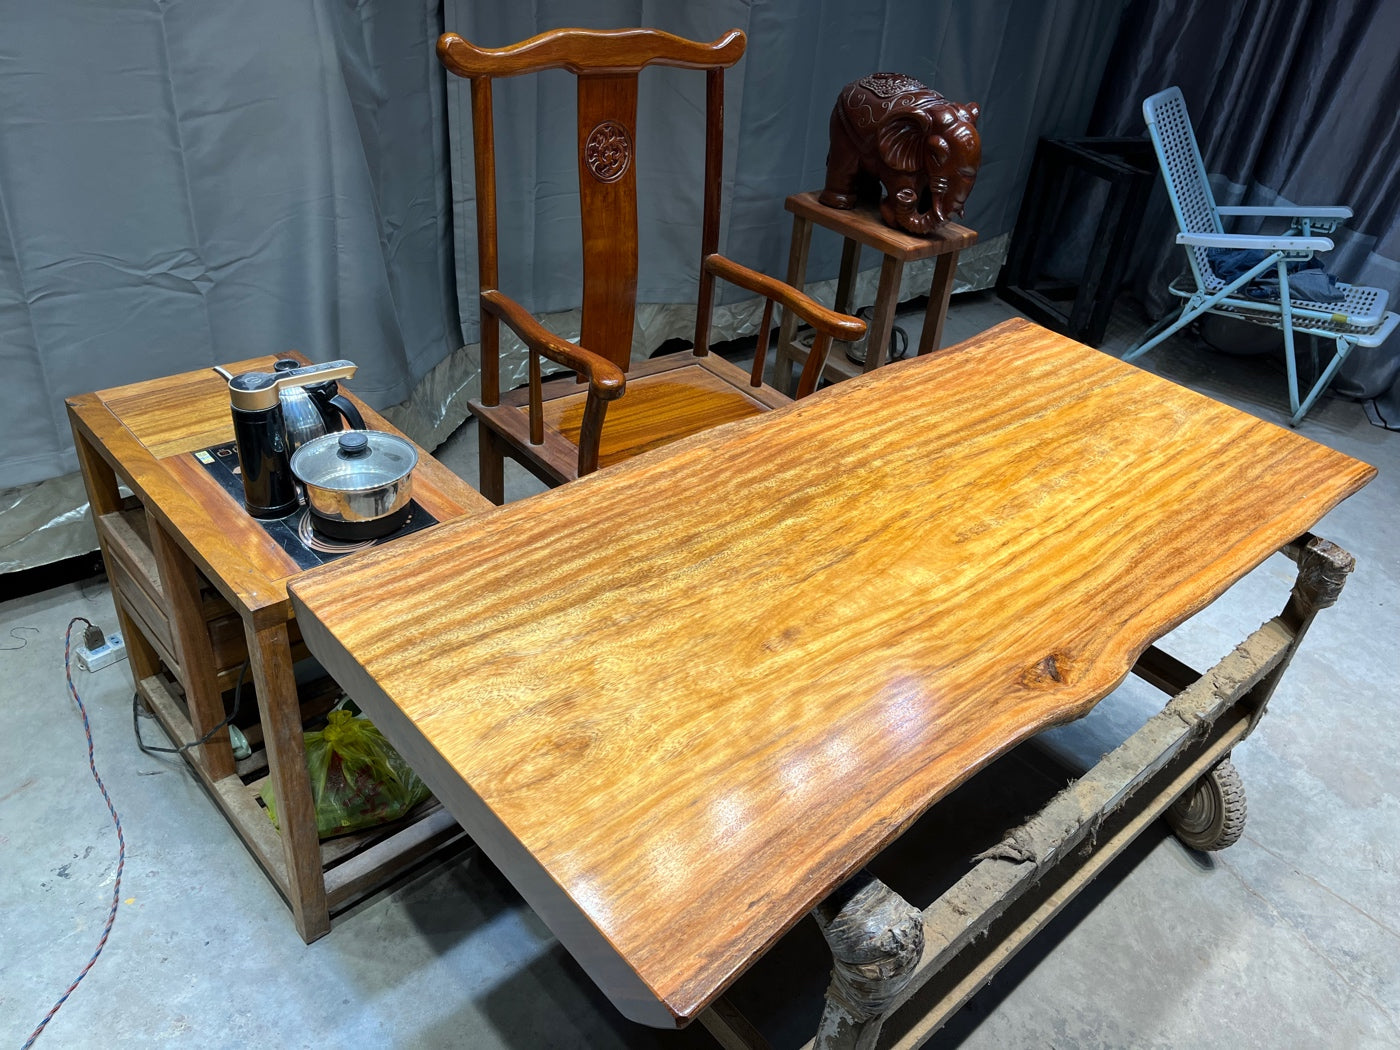 لوح سطح طاولة رخامية، لوح خشب، لوح تالي، طاولة تالي، لوح خشب تالي